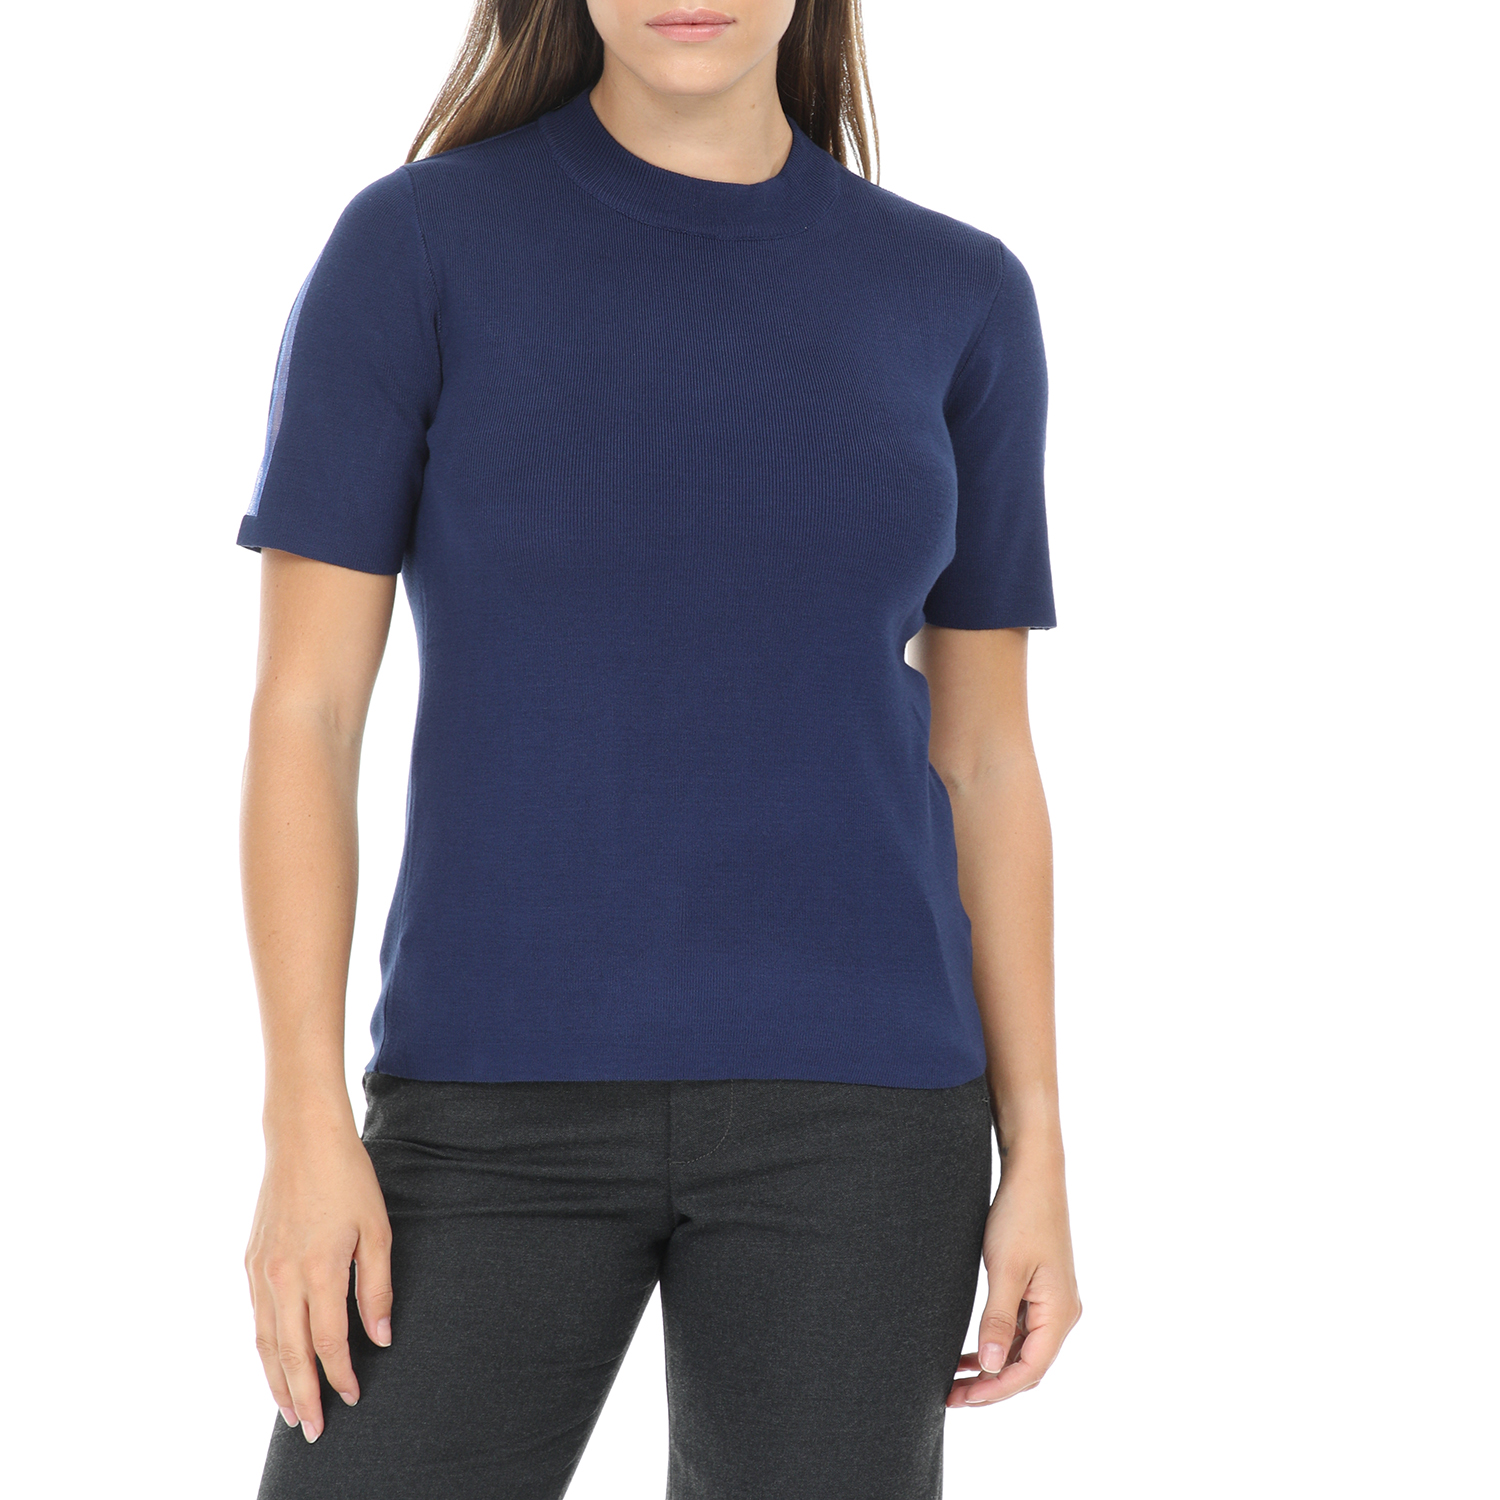 Γυναικεία/Ρούχα/Μπλούζες/Κοντομάνικες NU - Γυναικεία κοντομάνικη μπλούζα NU μπλε